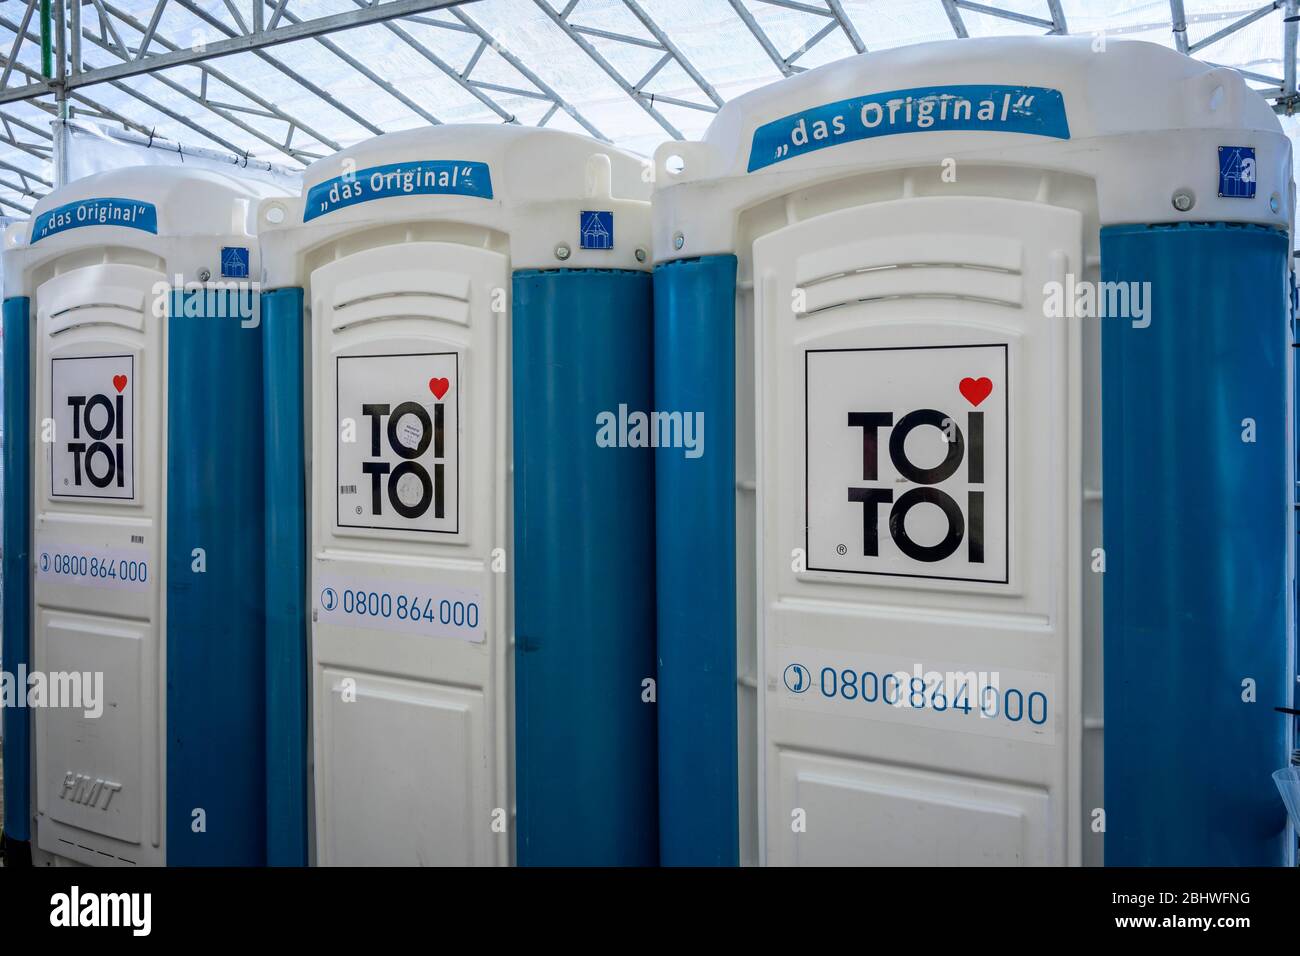 Cabinas de wc móviles TOI TOI, cabinas de wc lado a lado, Suiza Foto de stock